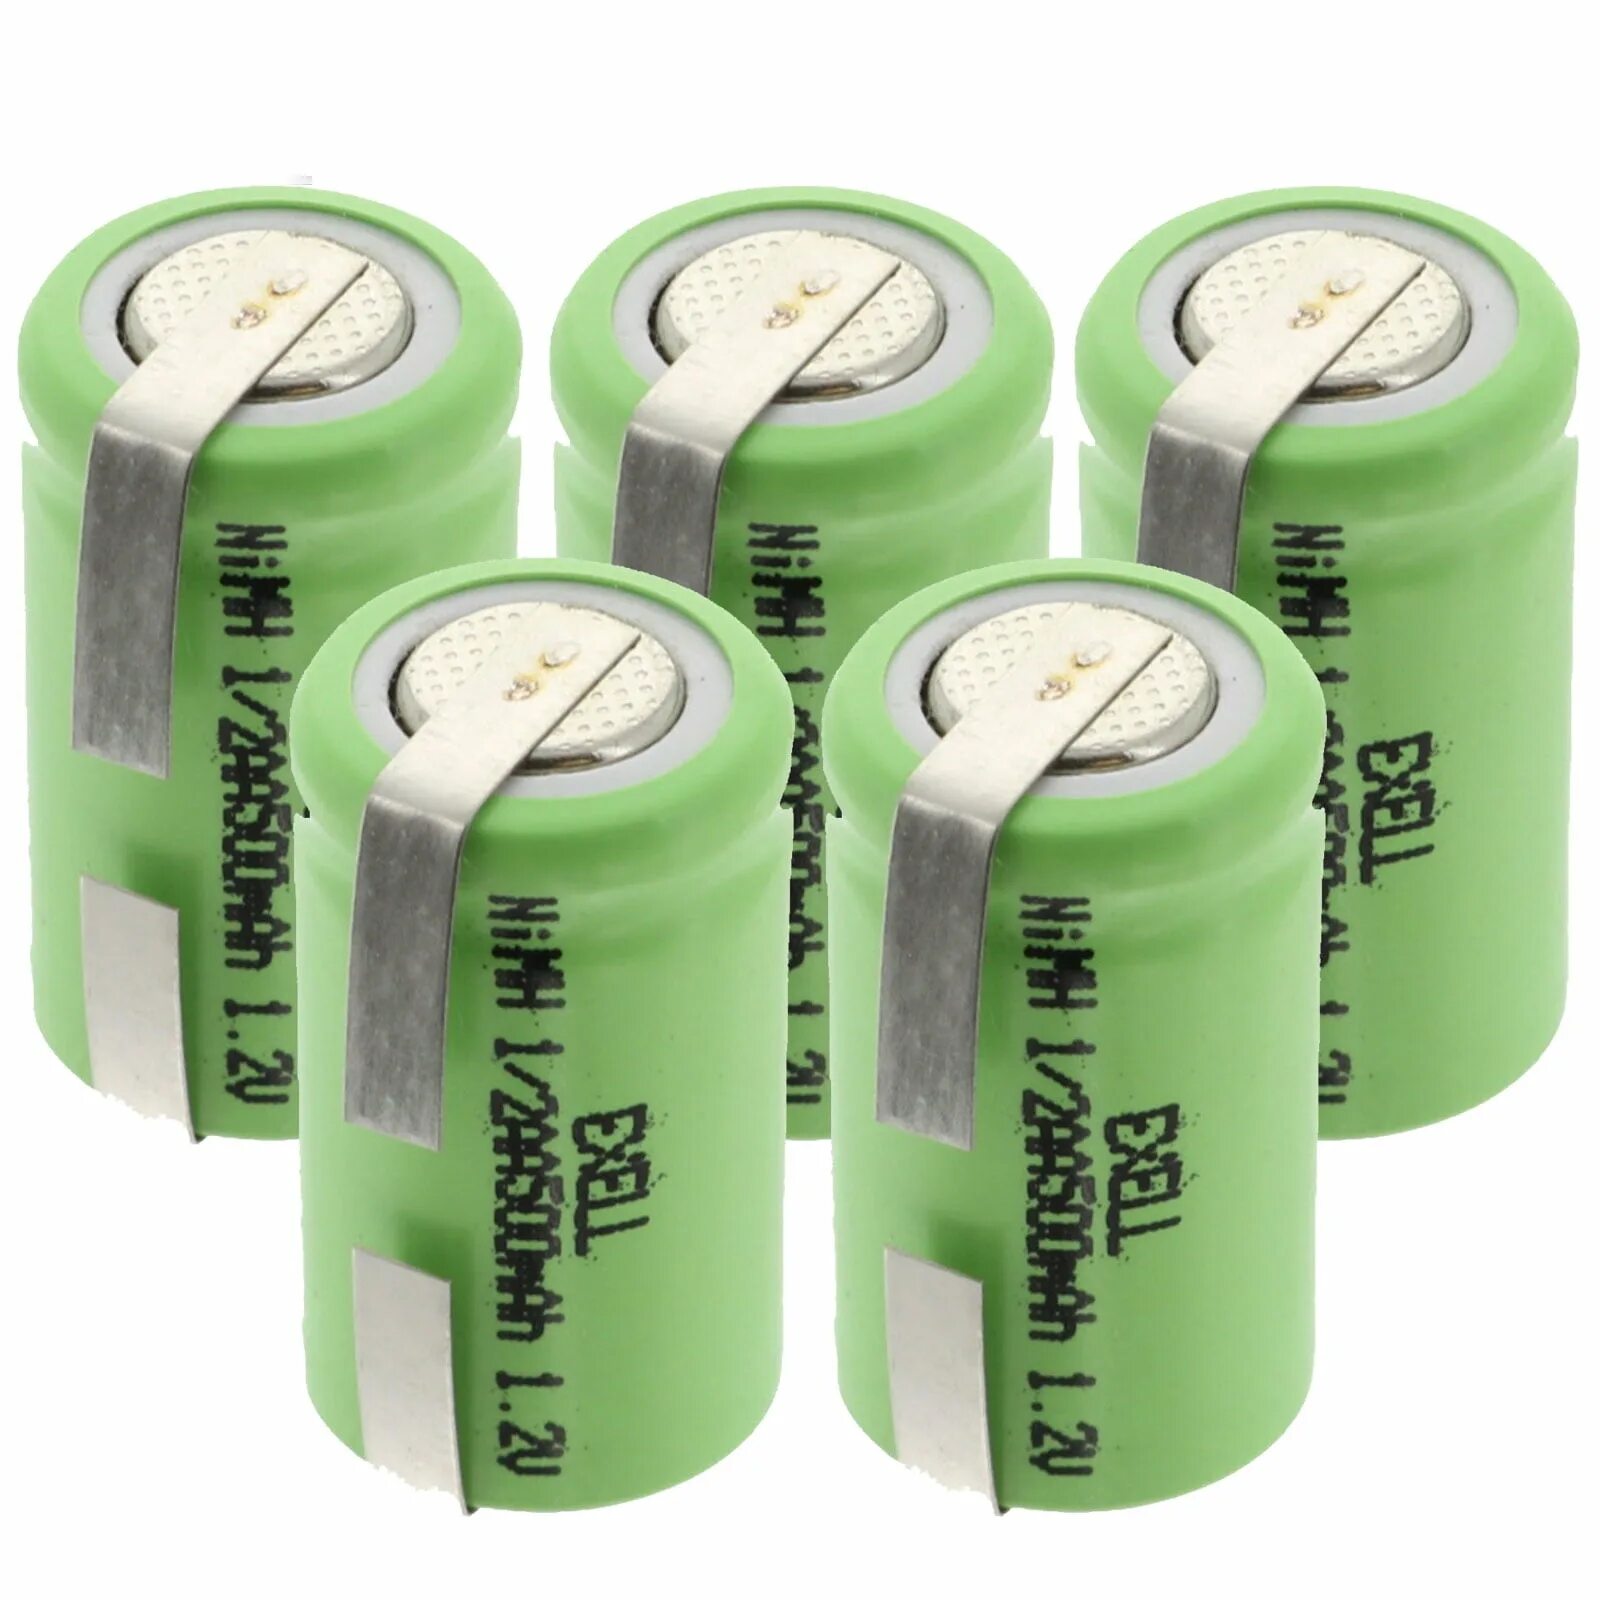 Аккумуляторная батарейка AA NIMH 300 Mah 1.2v. Ni-CD aa500mah 1.2v. 1.2V AA ni-CD 1000mah. 1,2 V 1/3aa 500mah ni-MH. Battery 1